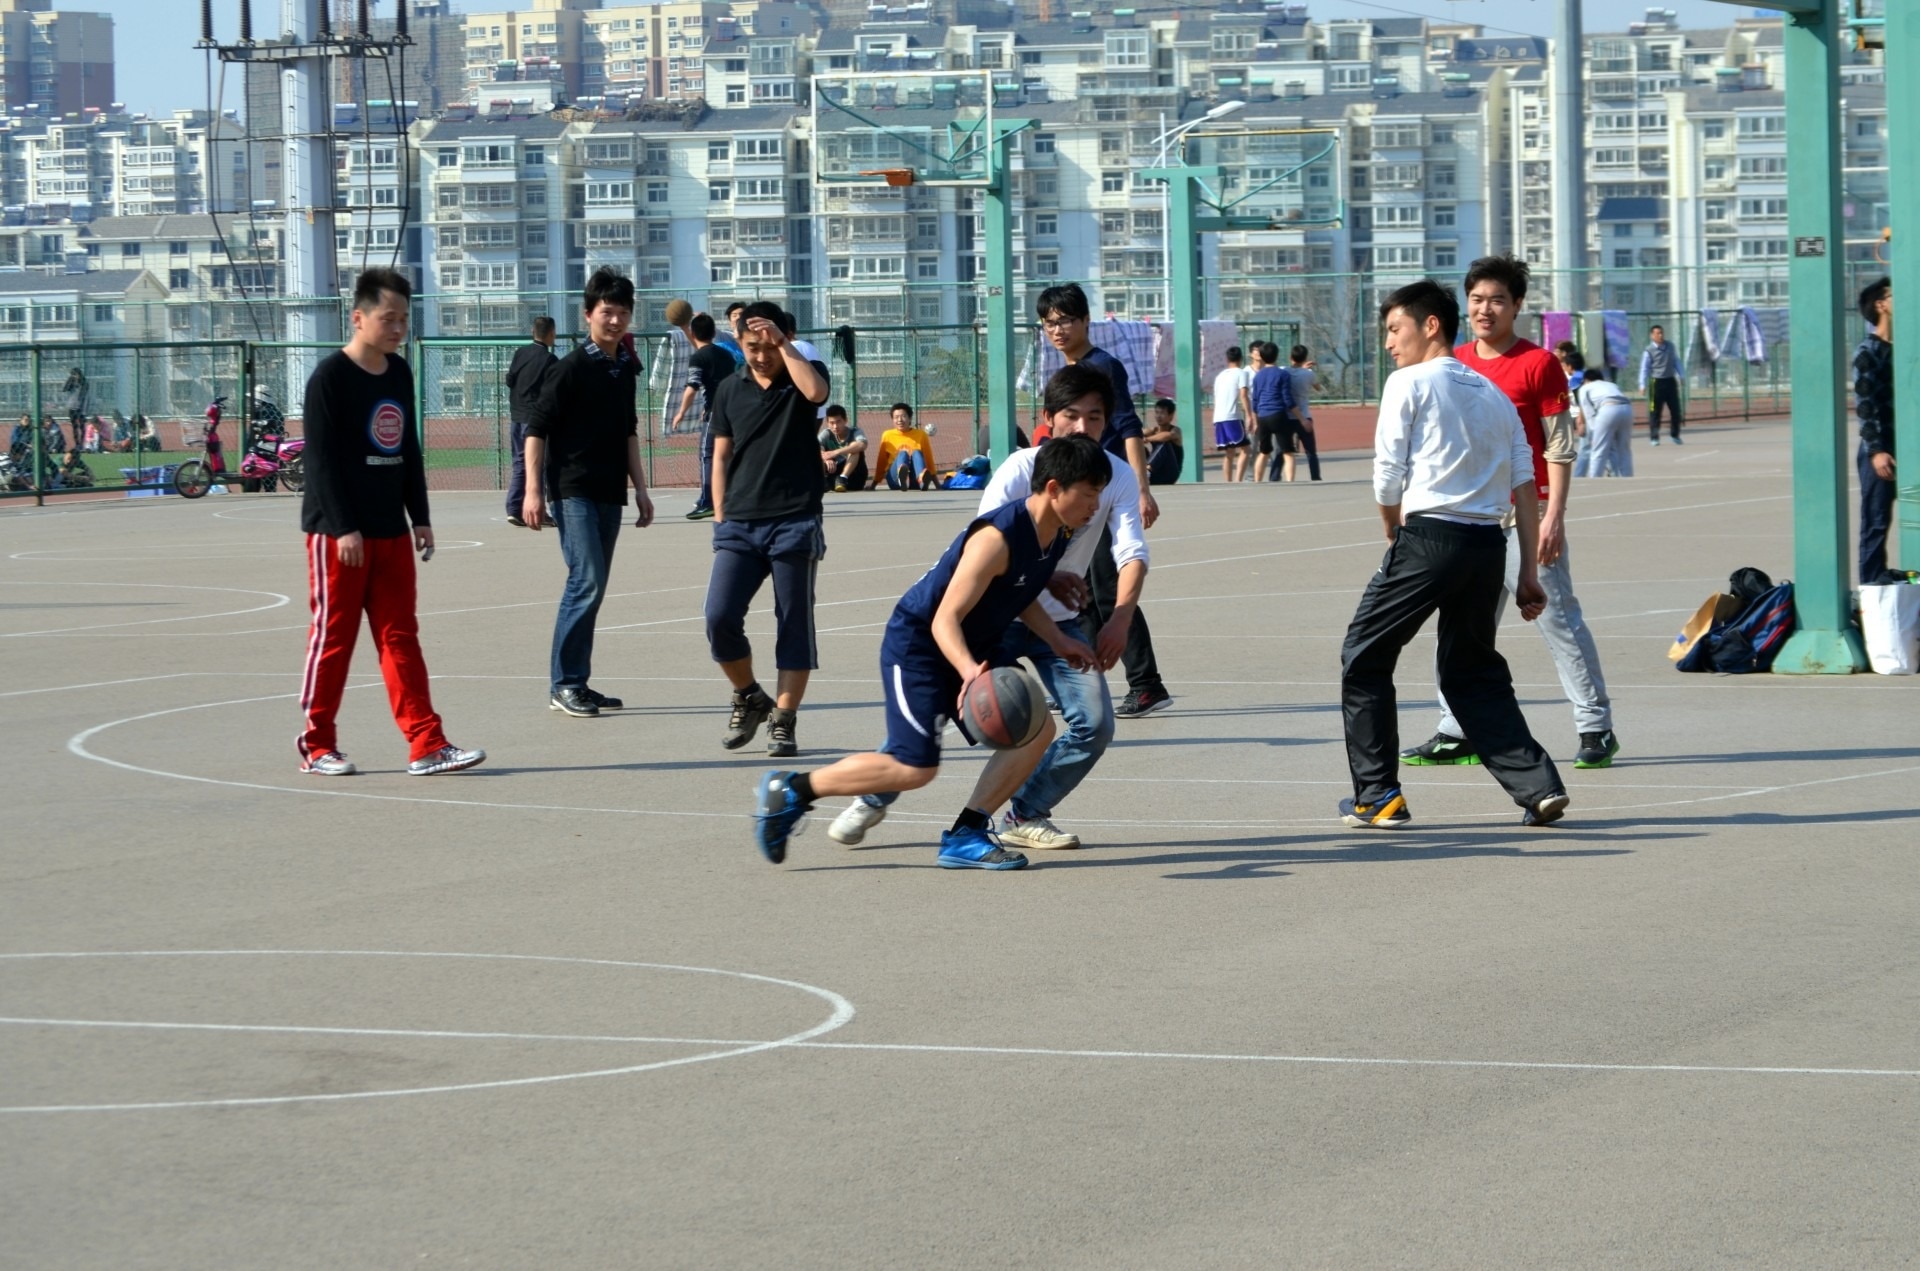 men's basketball match